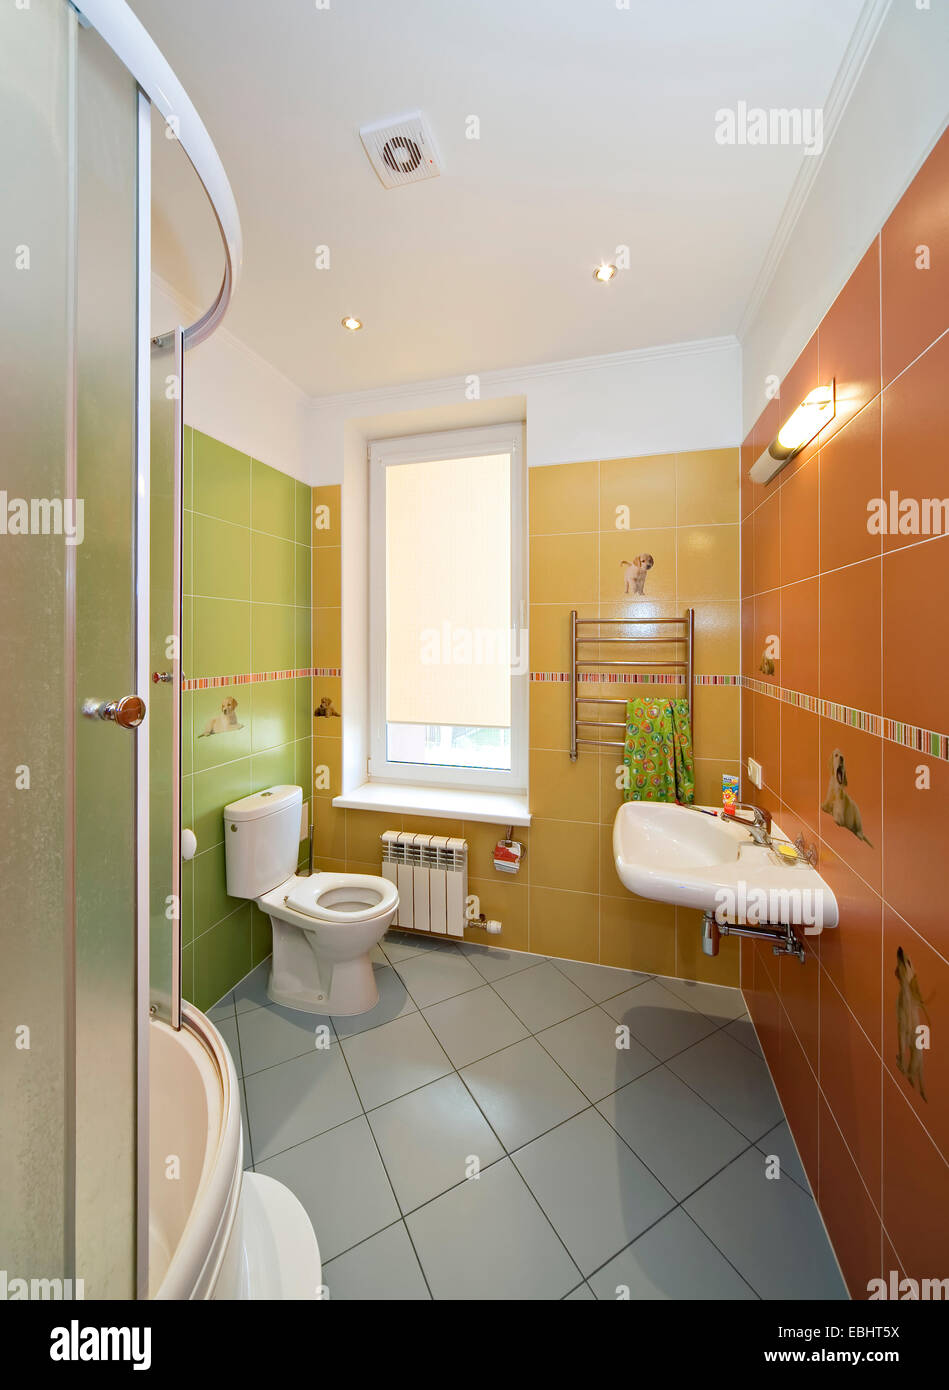 Bagno moderno interno, cabina doccia, specchio, lavandino. Verticale. interni home bagno interno vasca da bagno lusso contemporaneo piano Foto Stock